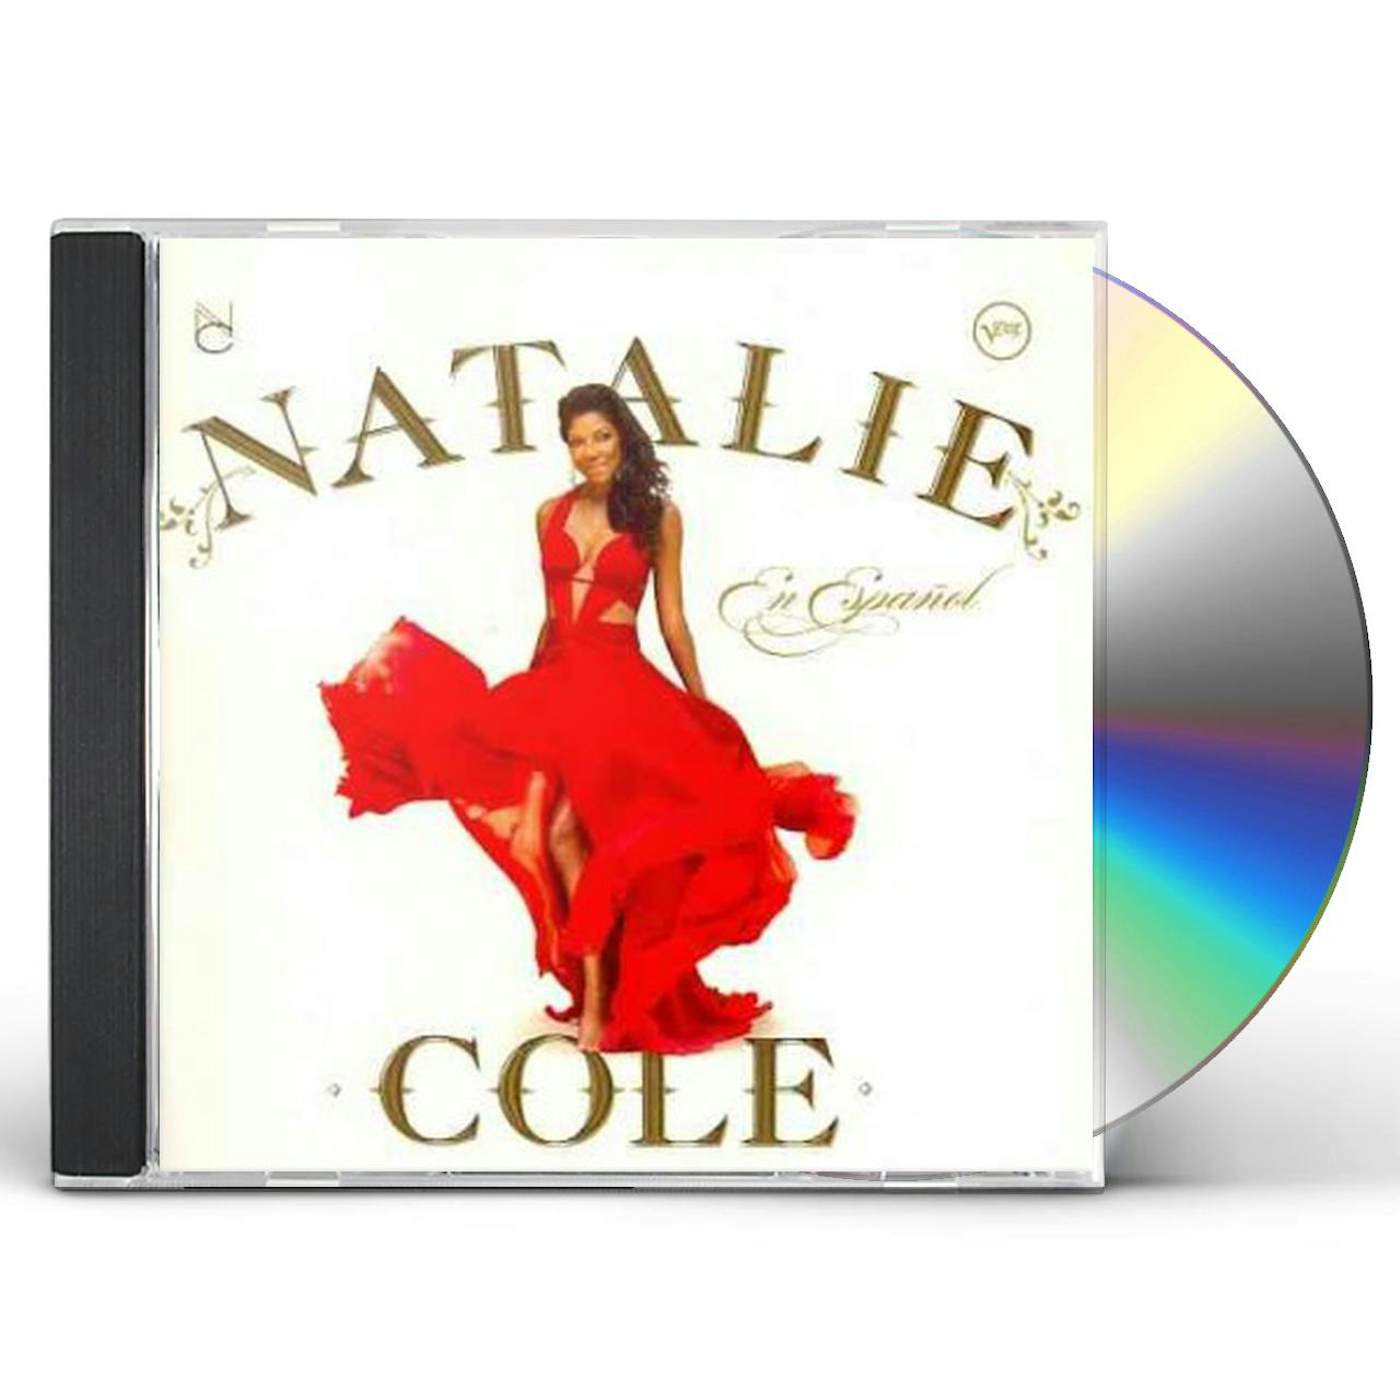 NATALIE COLE EN ESPANOL CD